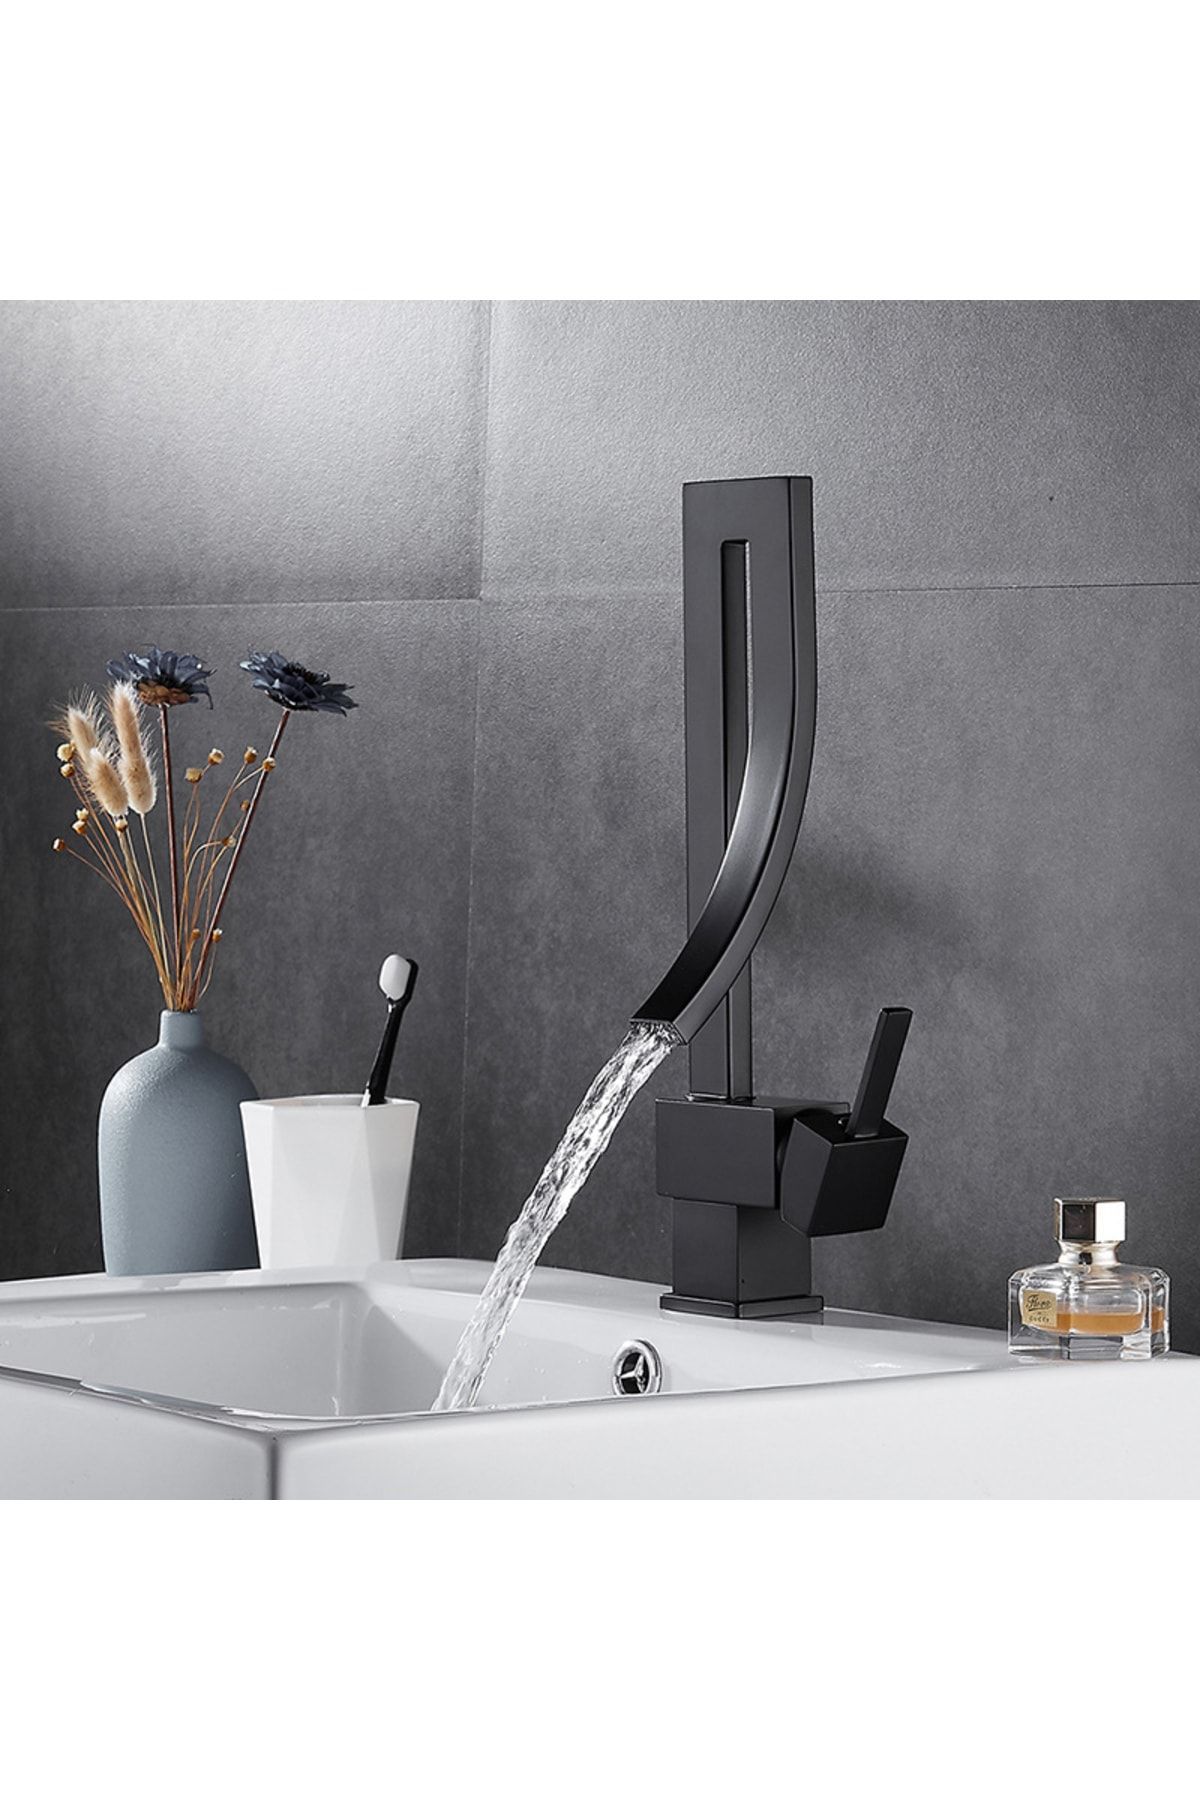 Anunnaki Özel Tasarım Matte Black Banyo Bataryası Retro Şelale Kare Havza Lavabo Bataryası